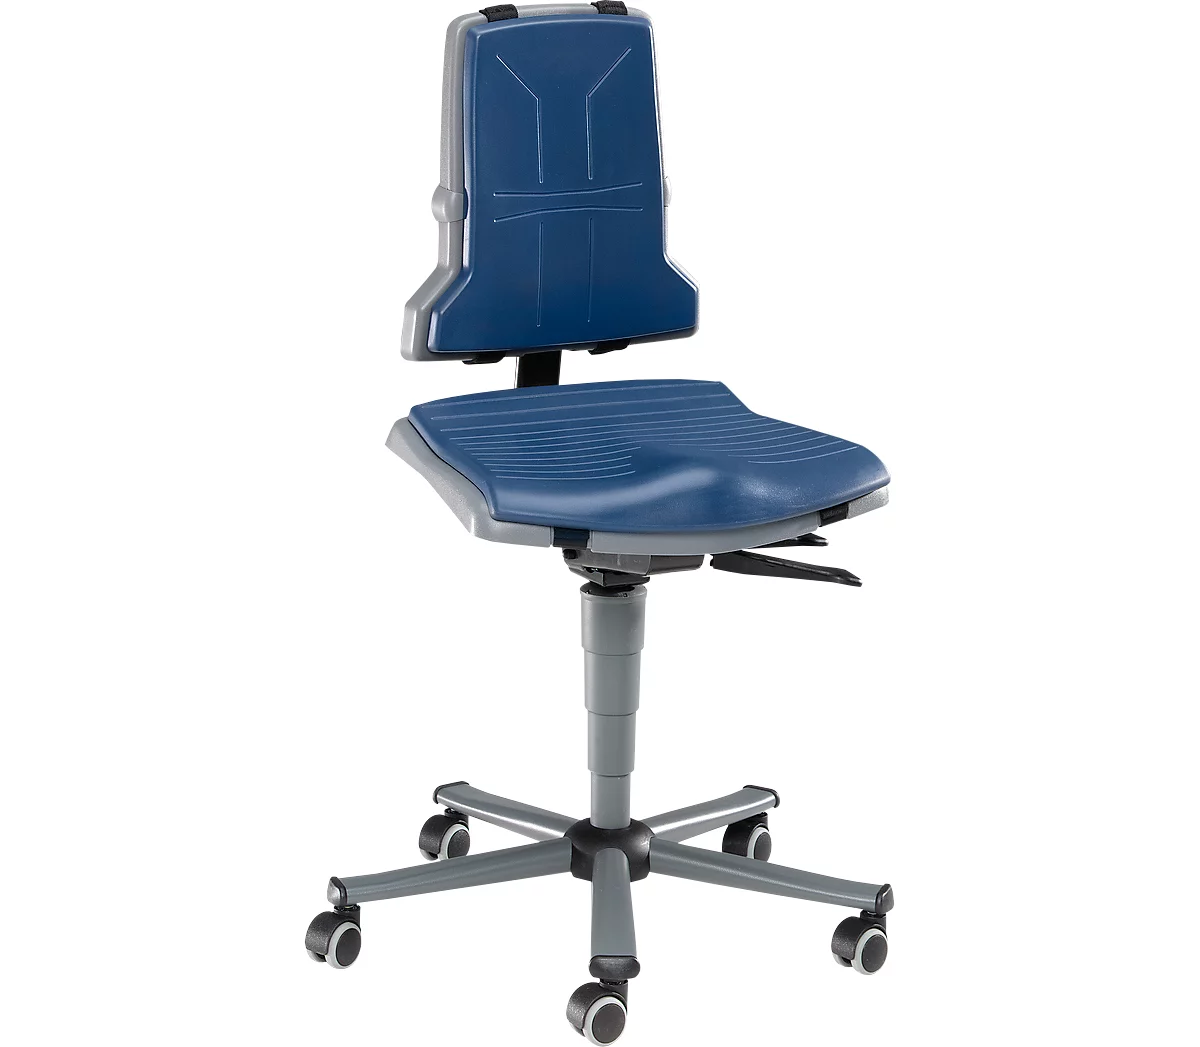 Silla de trabajo bimos SINTEC, contacto permanente con regulación de inclinación del asiento, asiento ortopédico, sin reposabrazos ni acolchado, con ruedas